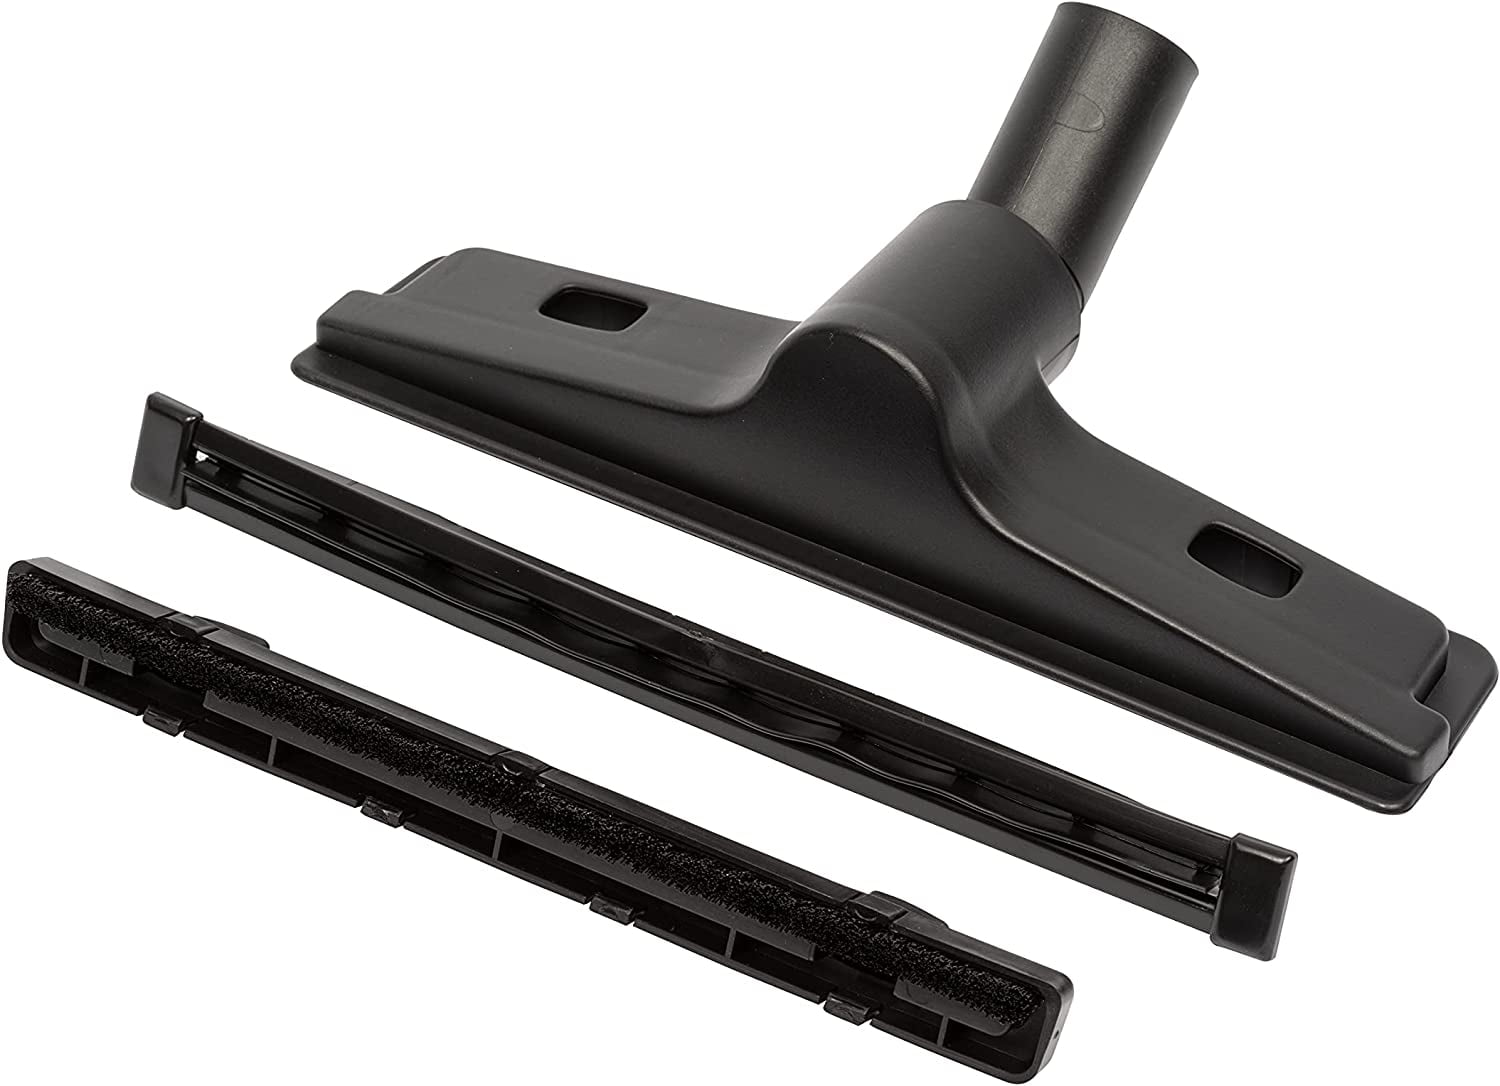 14" Floor Nozzle Tool for Shop Vac Craftsman Ridgid Genie Vacuum 2.5" Diameter 